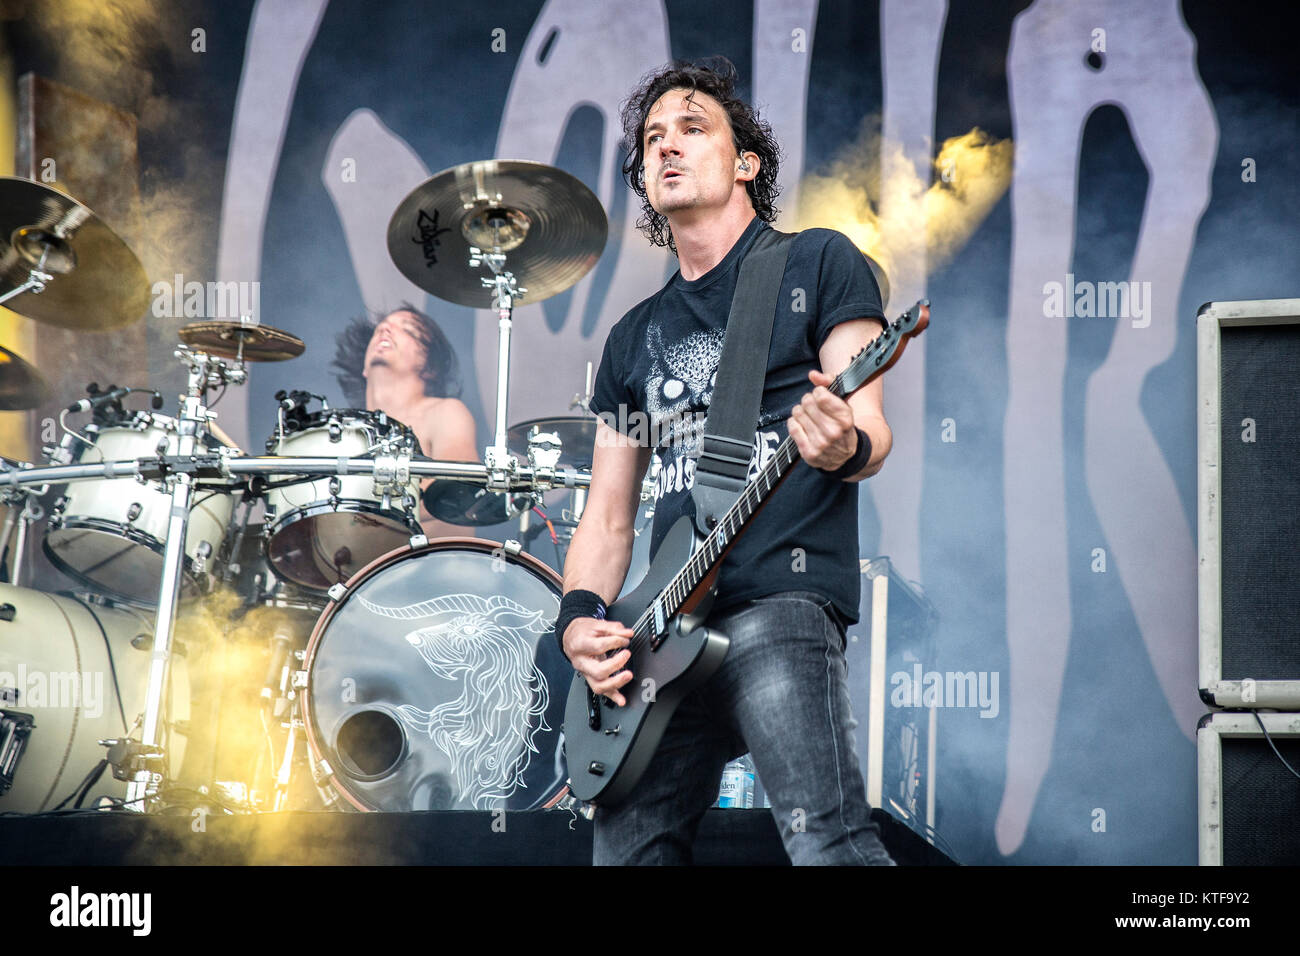 Die französischen Death Metal Band Gojira führt ein Live Konzert in der norwegischen Musik Festival Tonnen Gestein 2015. Hier Gitarrist und Sänger Joe Duplantier ist live auf der Bühne gesehen. Norwegen, 19/06 2015. Stockfoto